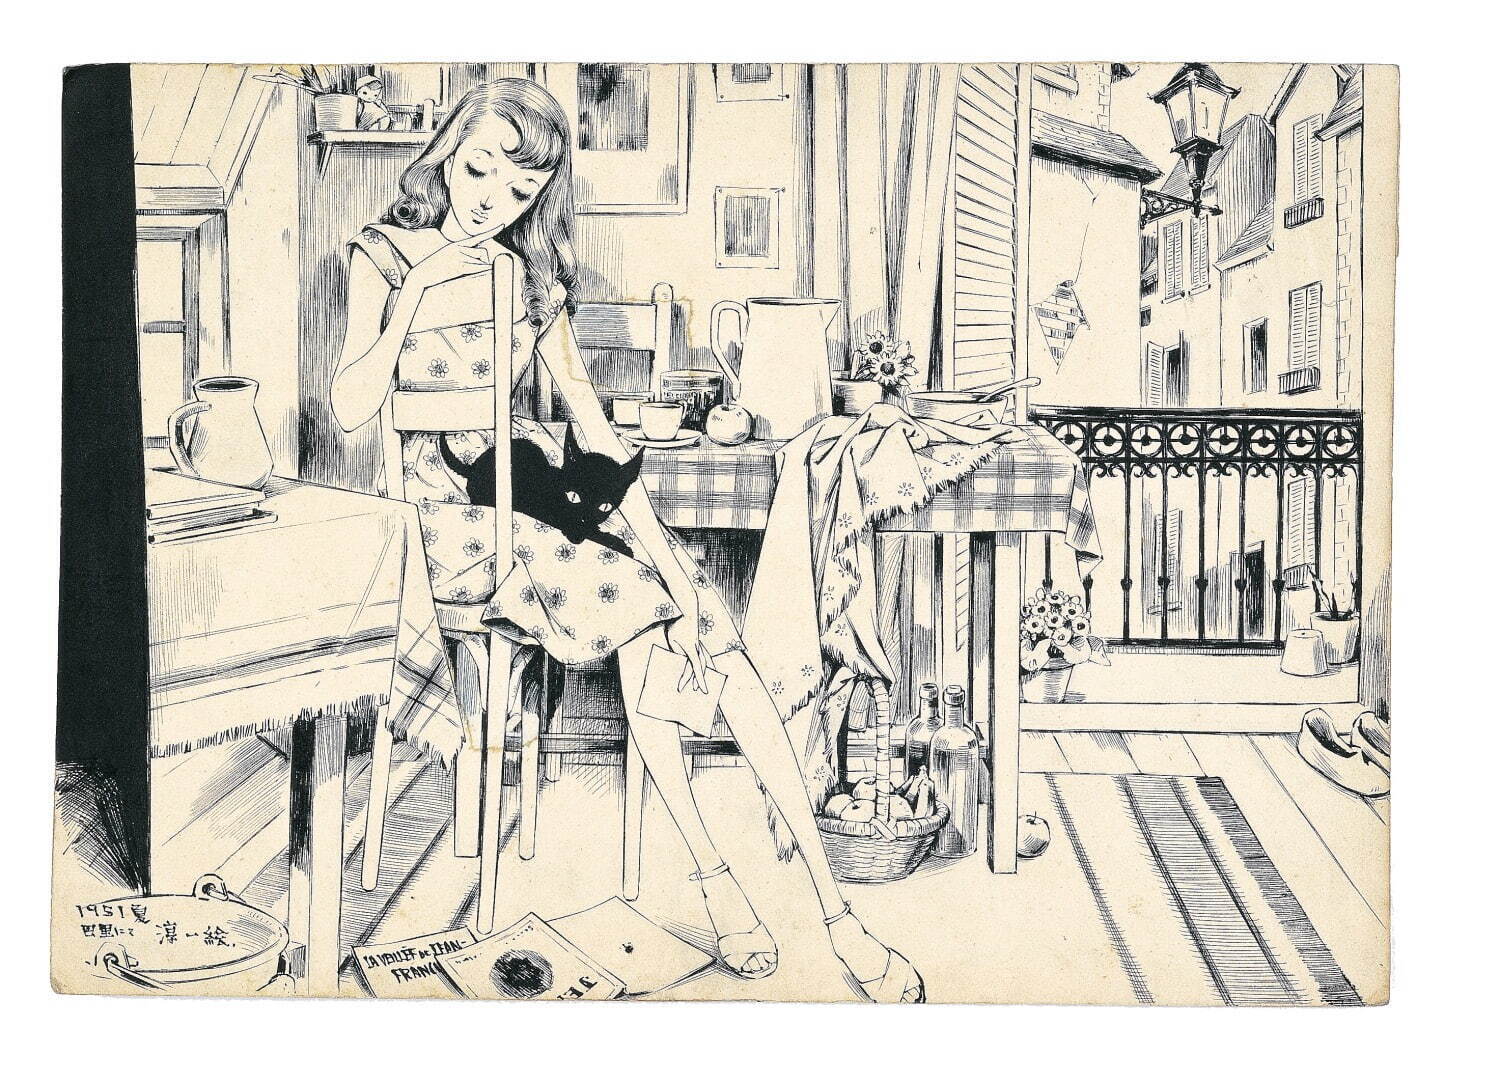 屋根裏部屋の少女(『ひまわり』第5巻第9号原画) 1951年 個人蔵
©JUNICHI NAKAHARA/HIMAWARIYA